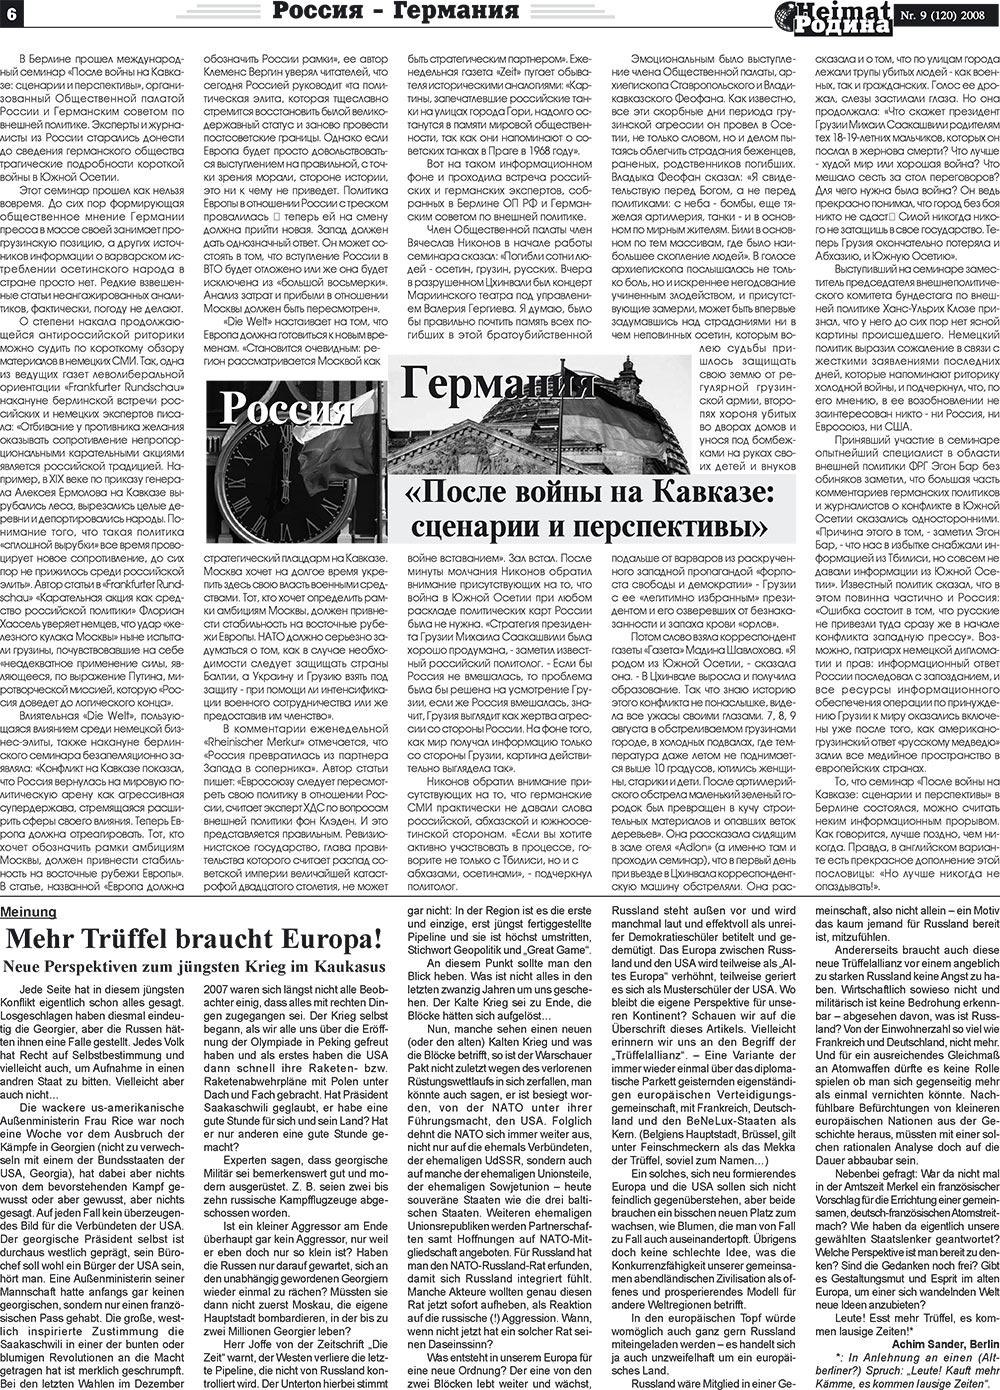 Heimat-Родина (газета). 2008 год, номер 9, стр. 6